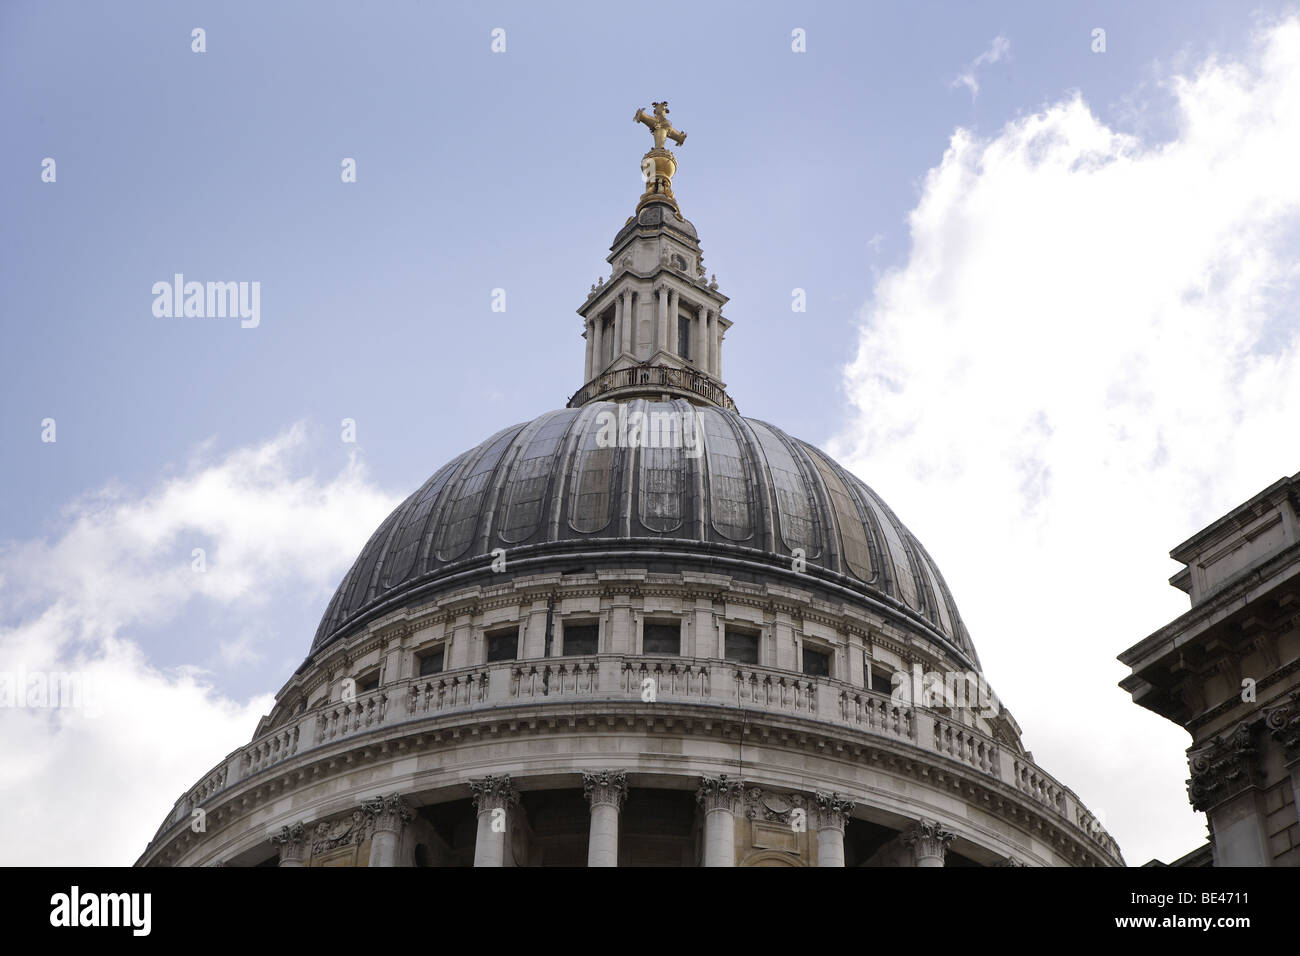 Aspectos de la catedral de San Pablo en Londres.La arquitectura Sir Christopher Wren hito religioso.griego perspectiva la influencia romana. Foto de stock